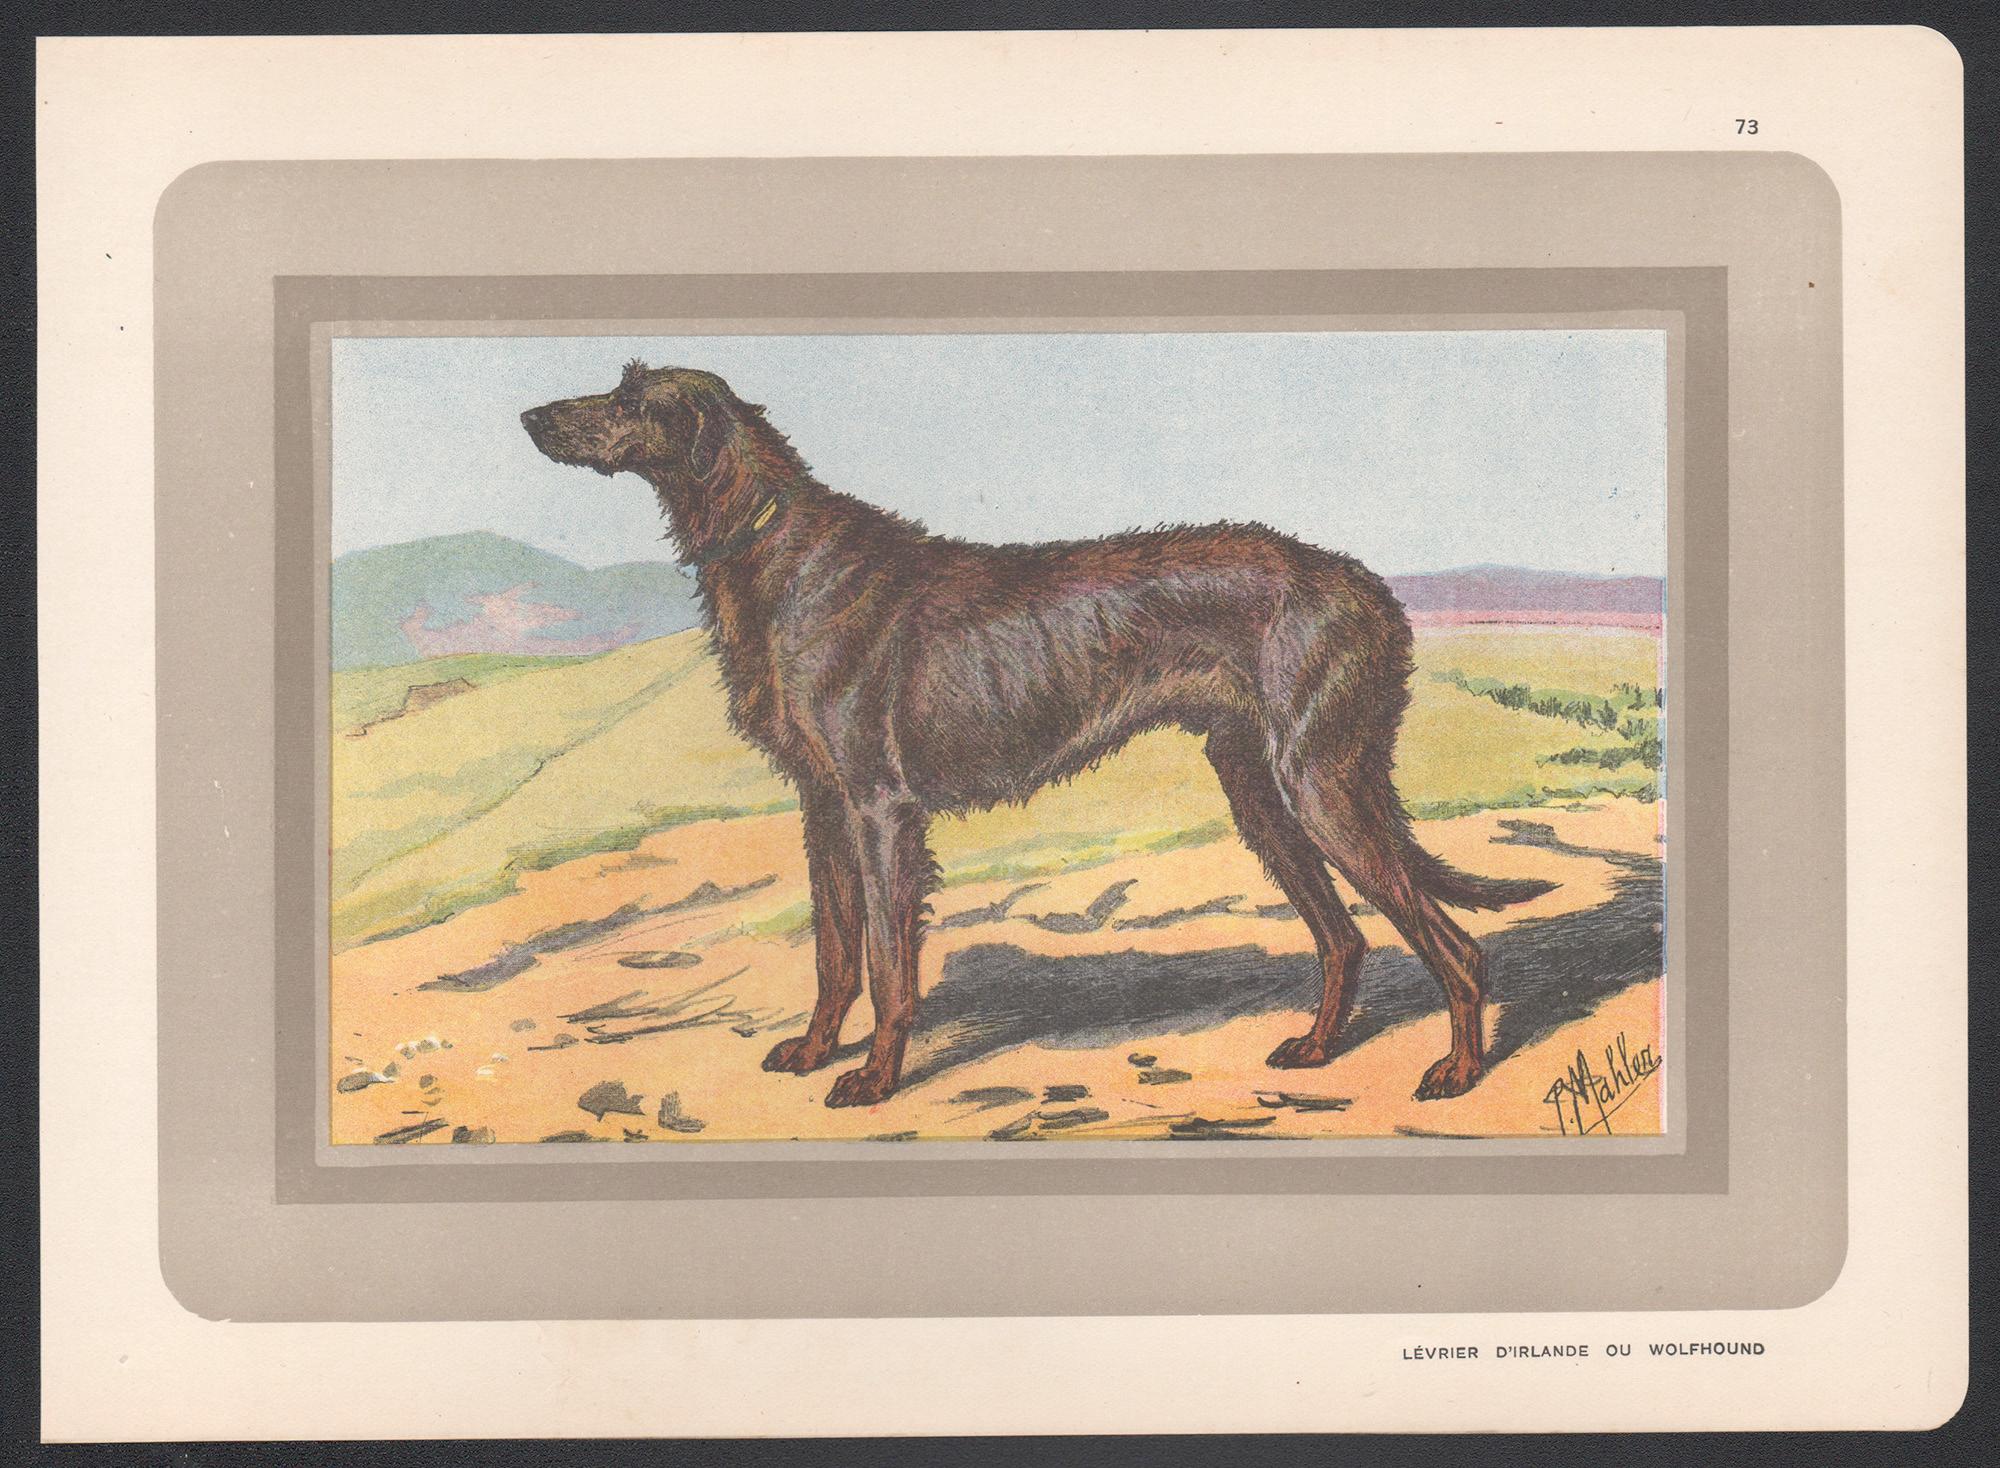 Impression chromolithologique d'un loup-garou irlandais, chien de chasse français, années 1930 - Print de P. Mahler